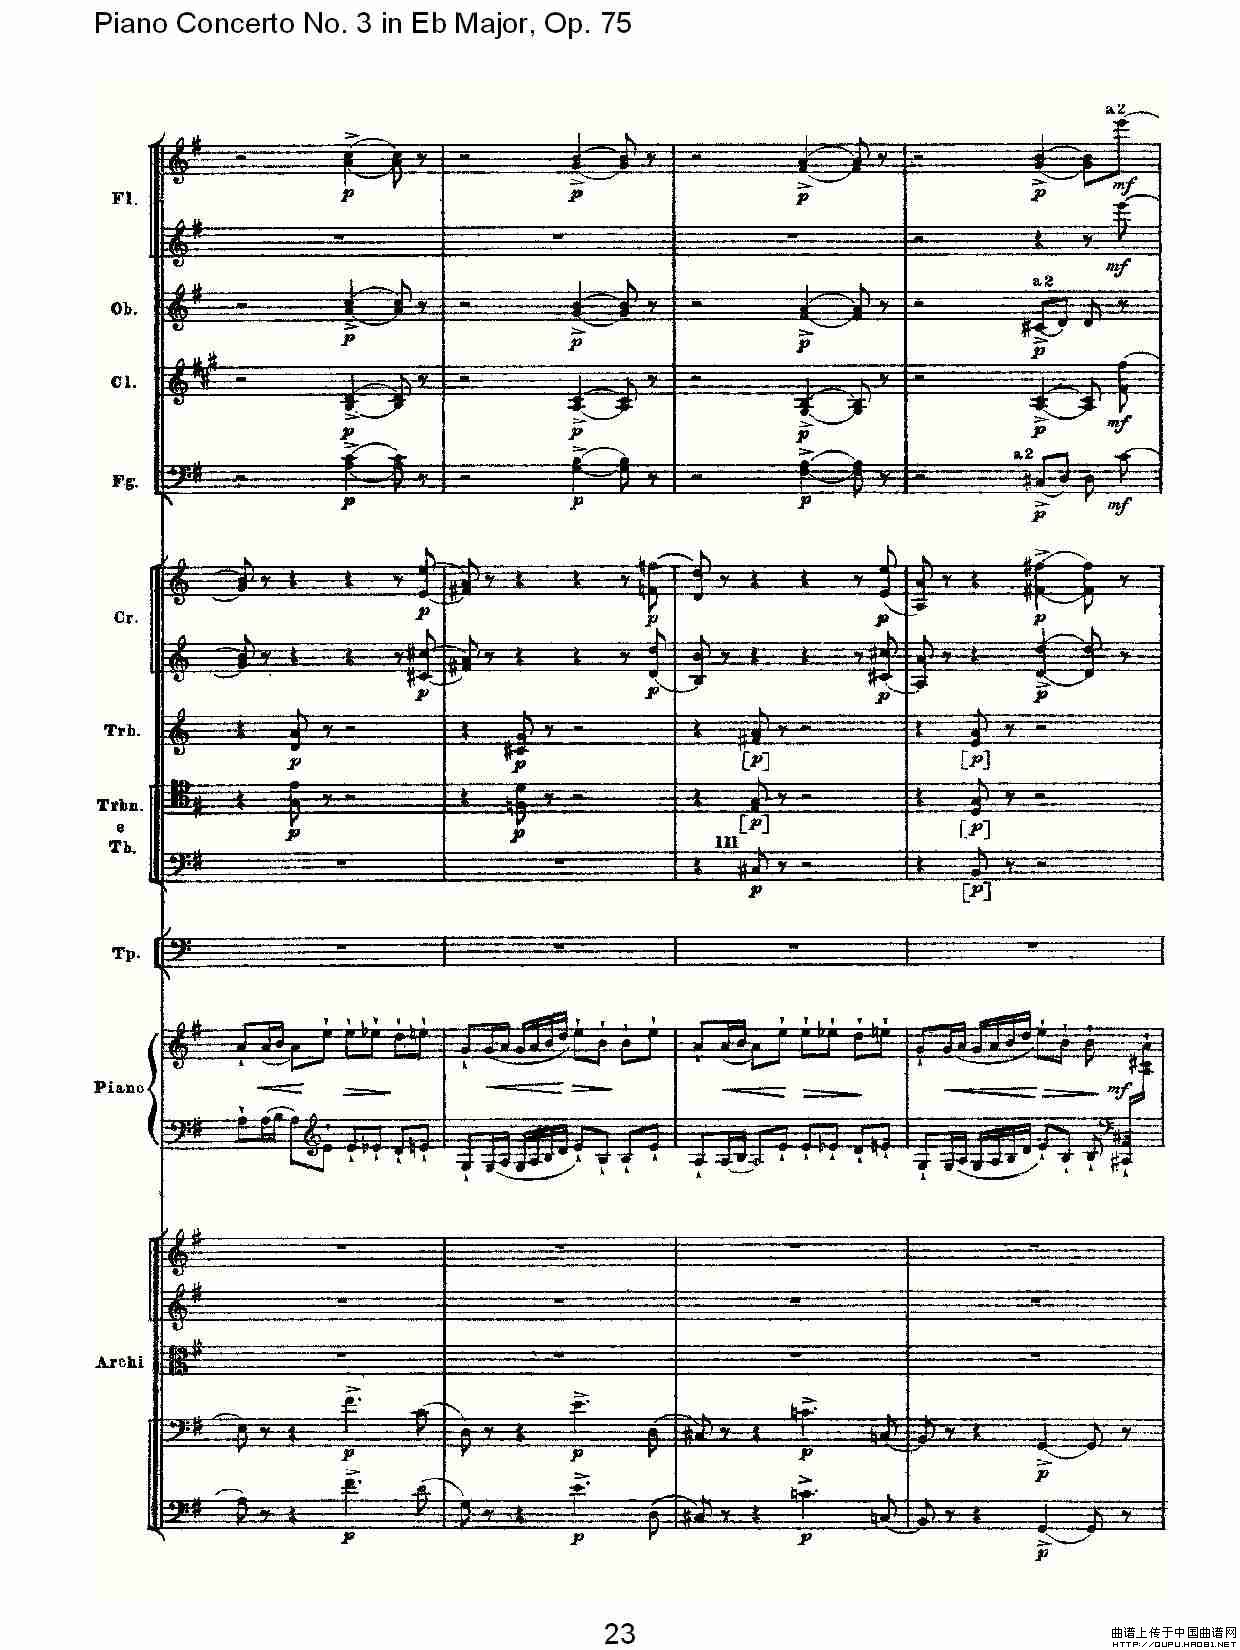 Piano Concerto No.3 in Eb Major,Op.75（Eb大调第三钢琴协奏曲）(1)_原文件名：Piano Concerto No.3 in Eb Major,Op.7523.jpg